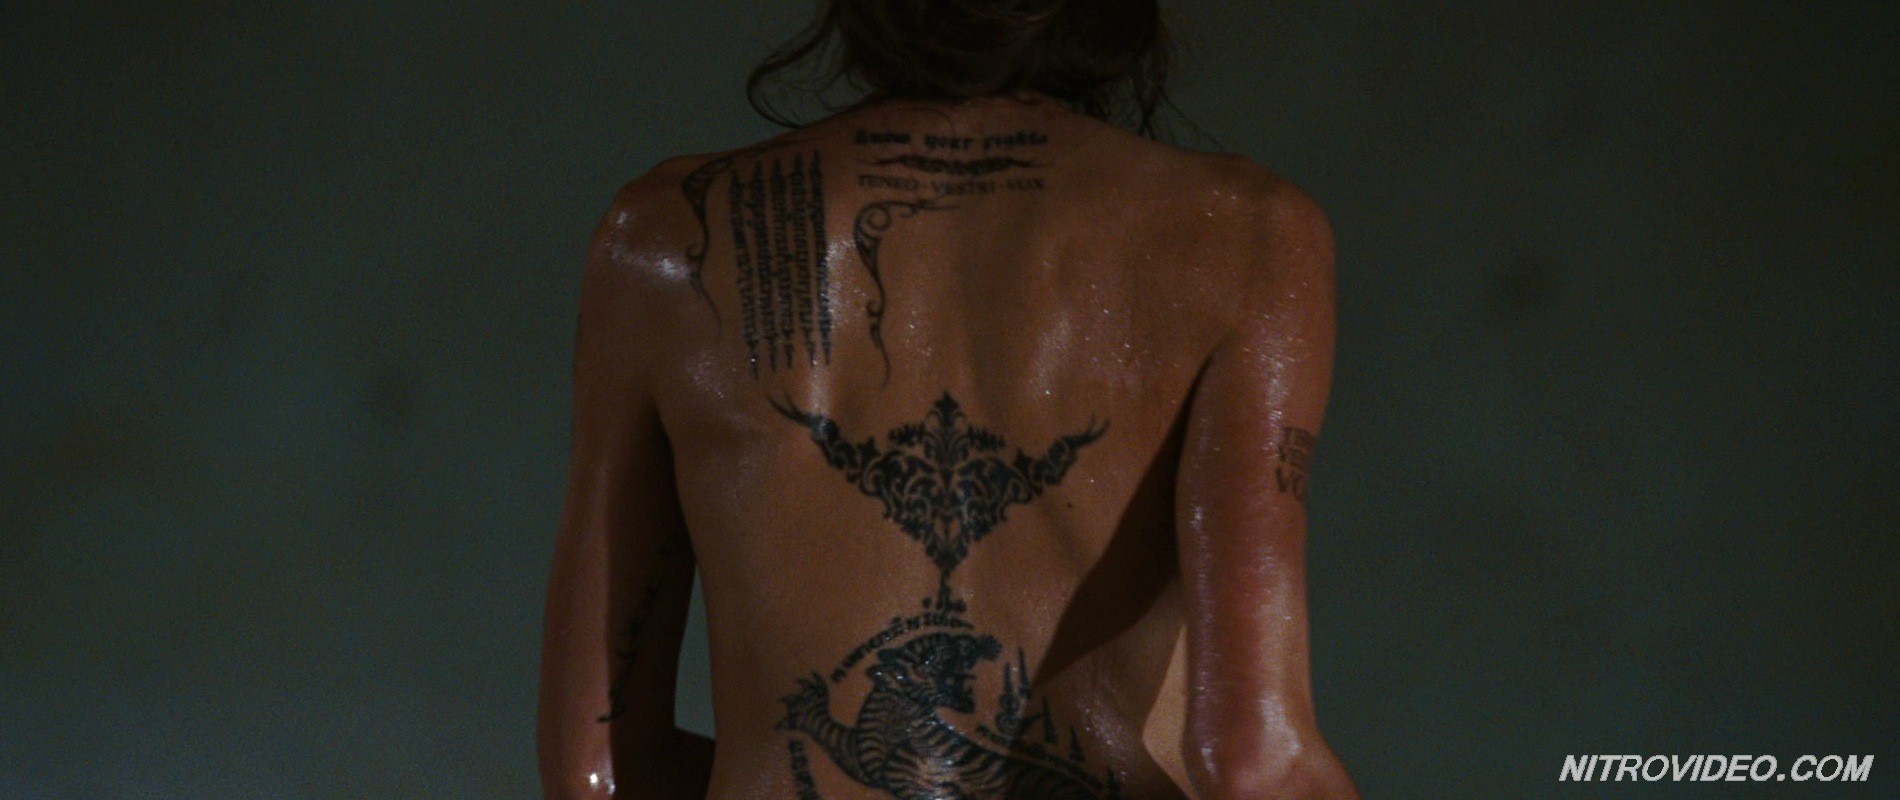 Angelina Jolie exposing her hot tattooed body #70256242